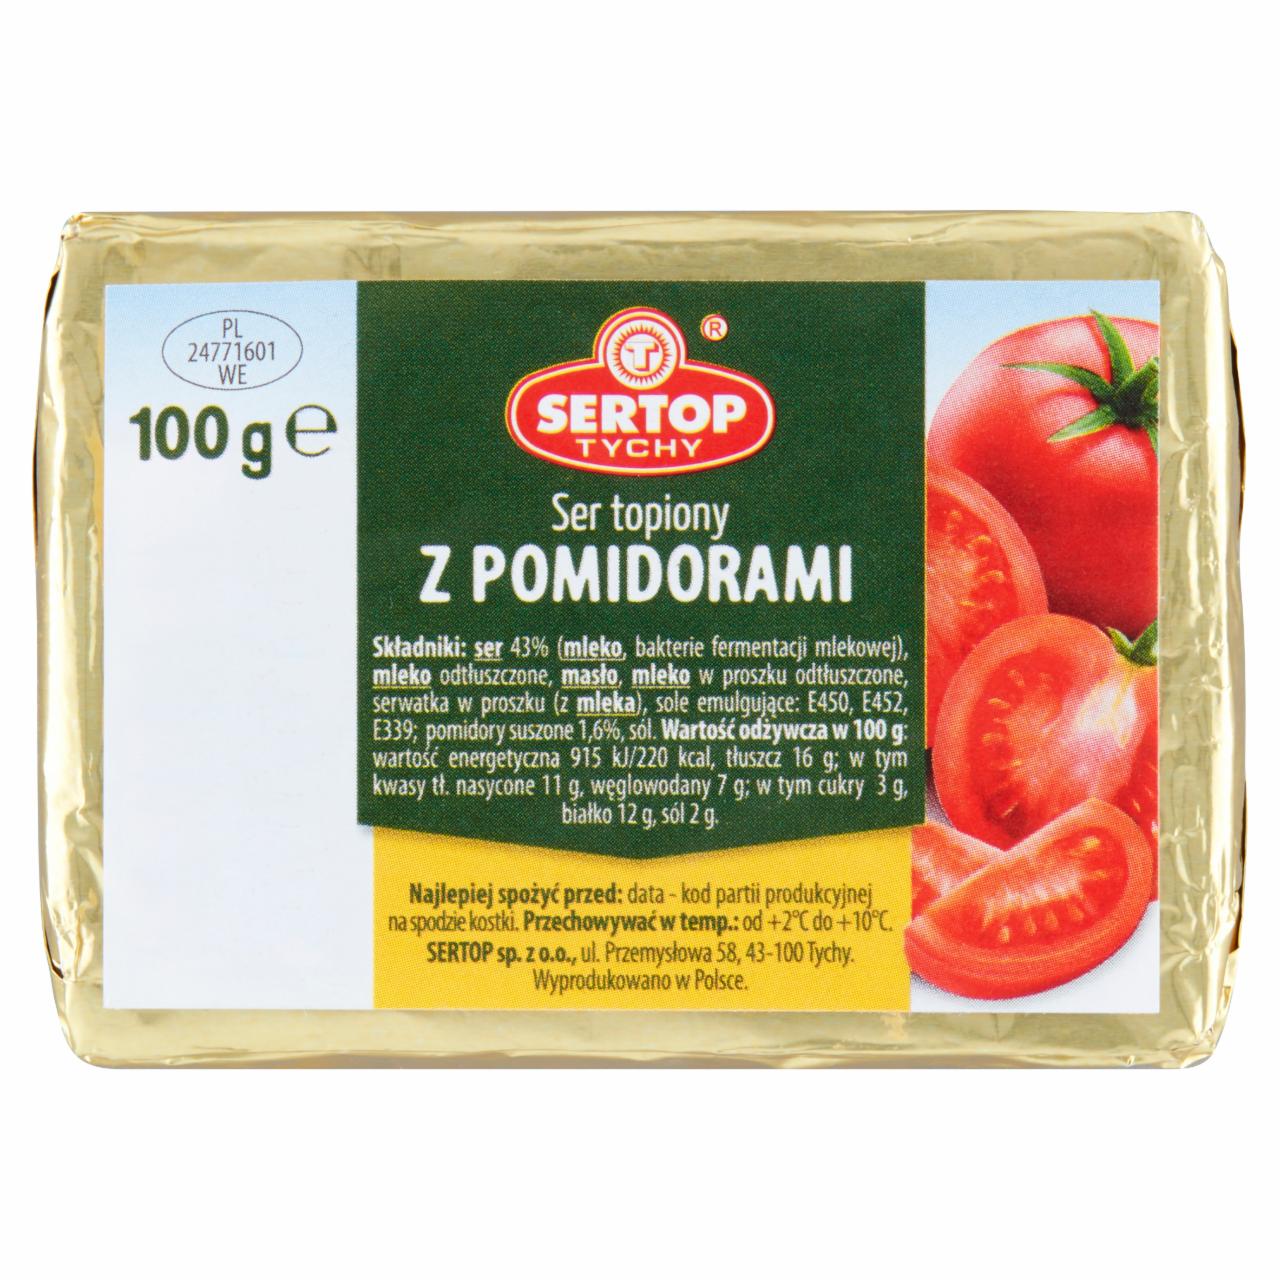 Zdjęcia - Sertop Tychy Ser topiony z pomidorami 100 g